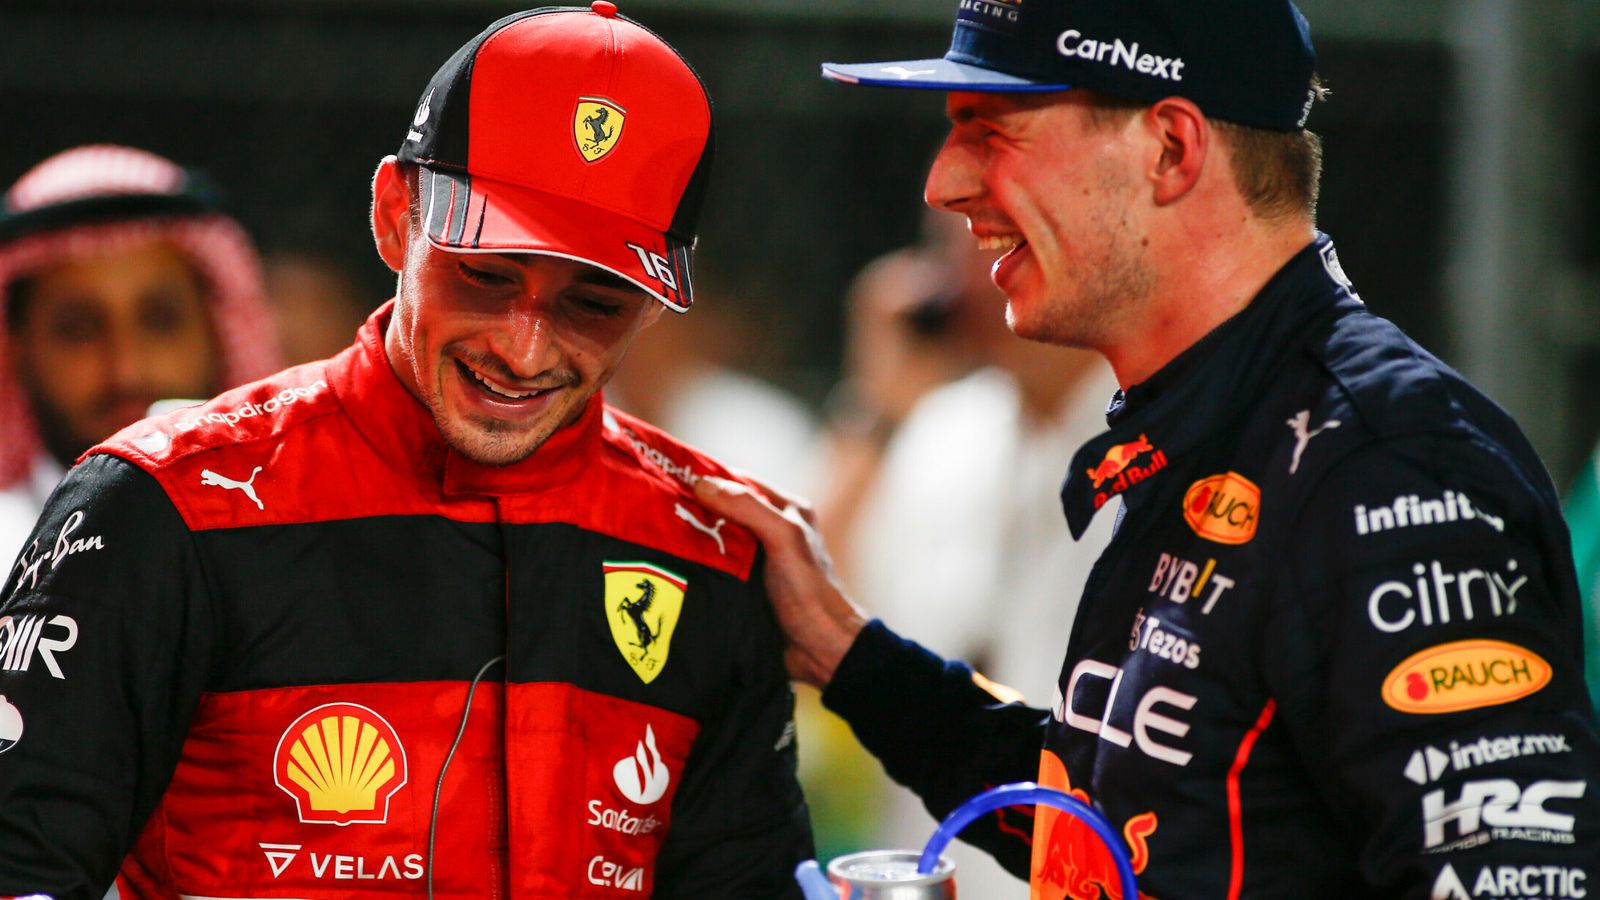 Max Verstappen x Charles Leclerc: Por que a nova rivalidade pelo título é tão diferente do duelo de Lewis Hamilton do ano passado